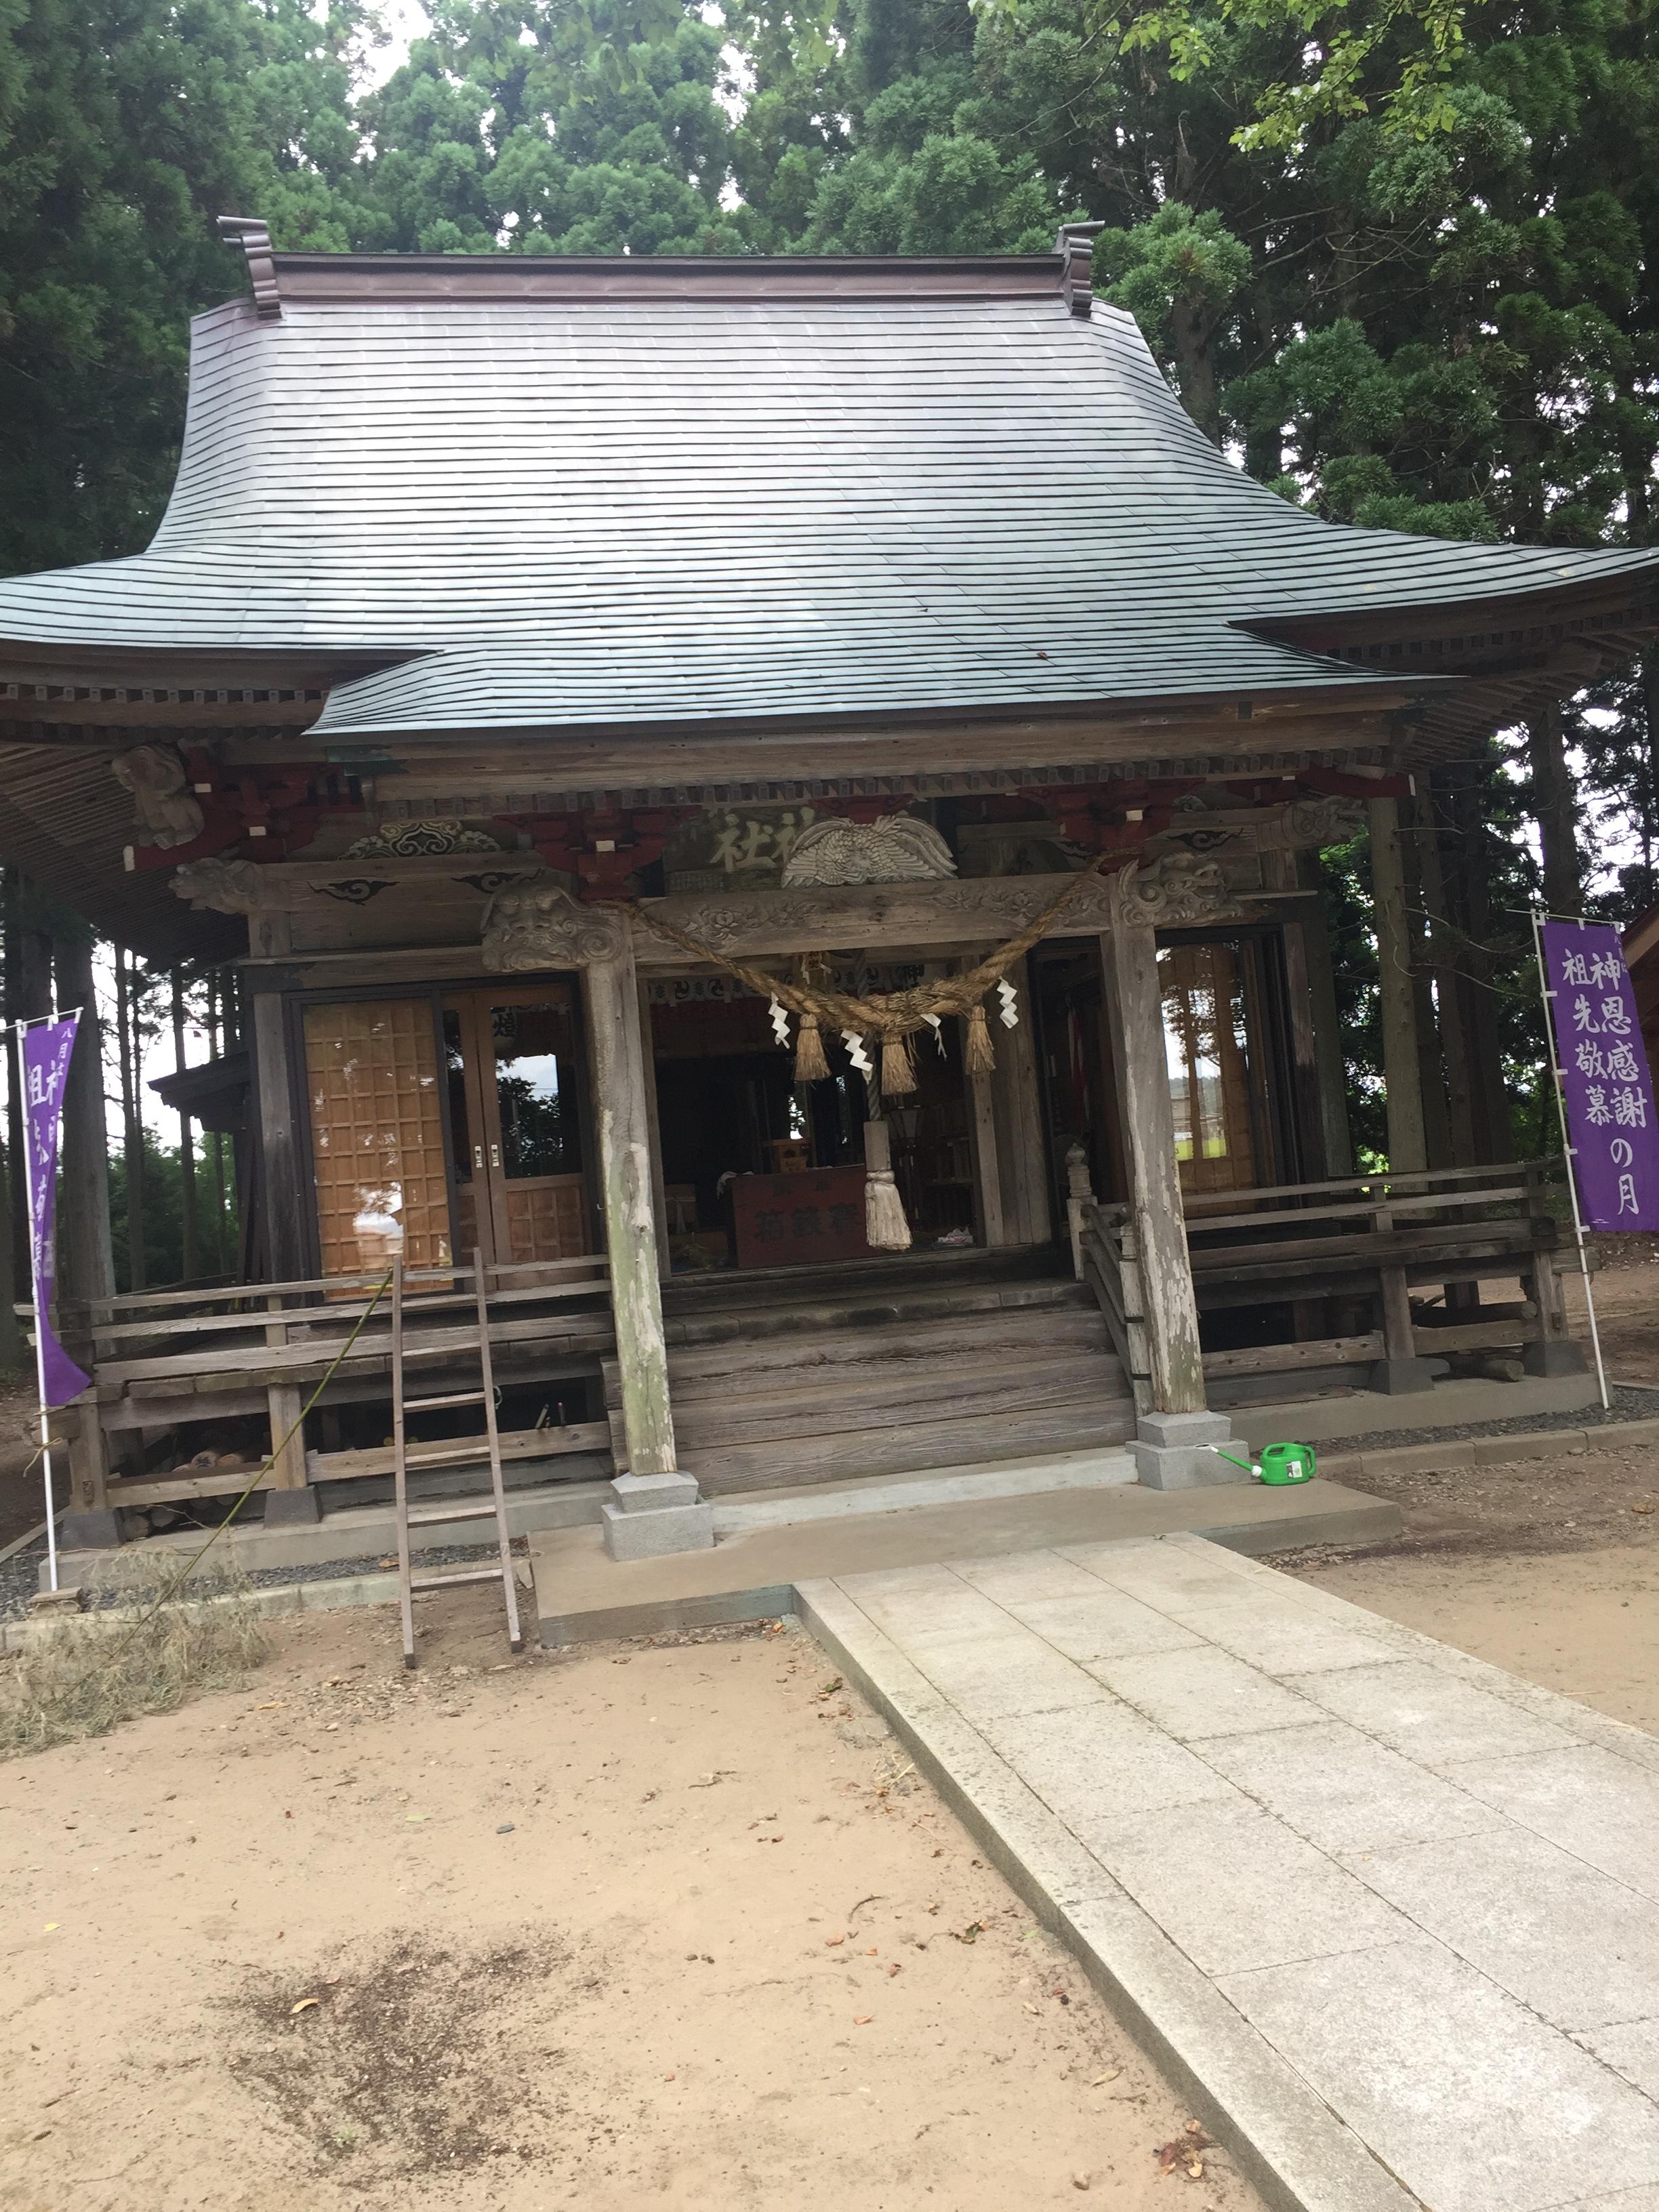 八幡神社 秋田県四ツ小屋駅 の投稿 1回目 こちらも帰省の際に立ち寄らせていただいた神社 ホトカミ